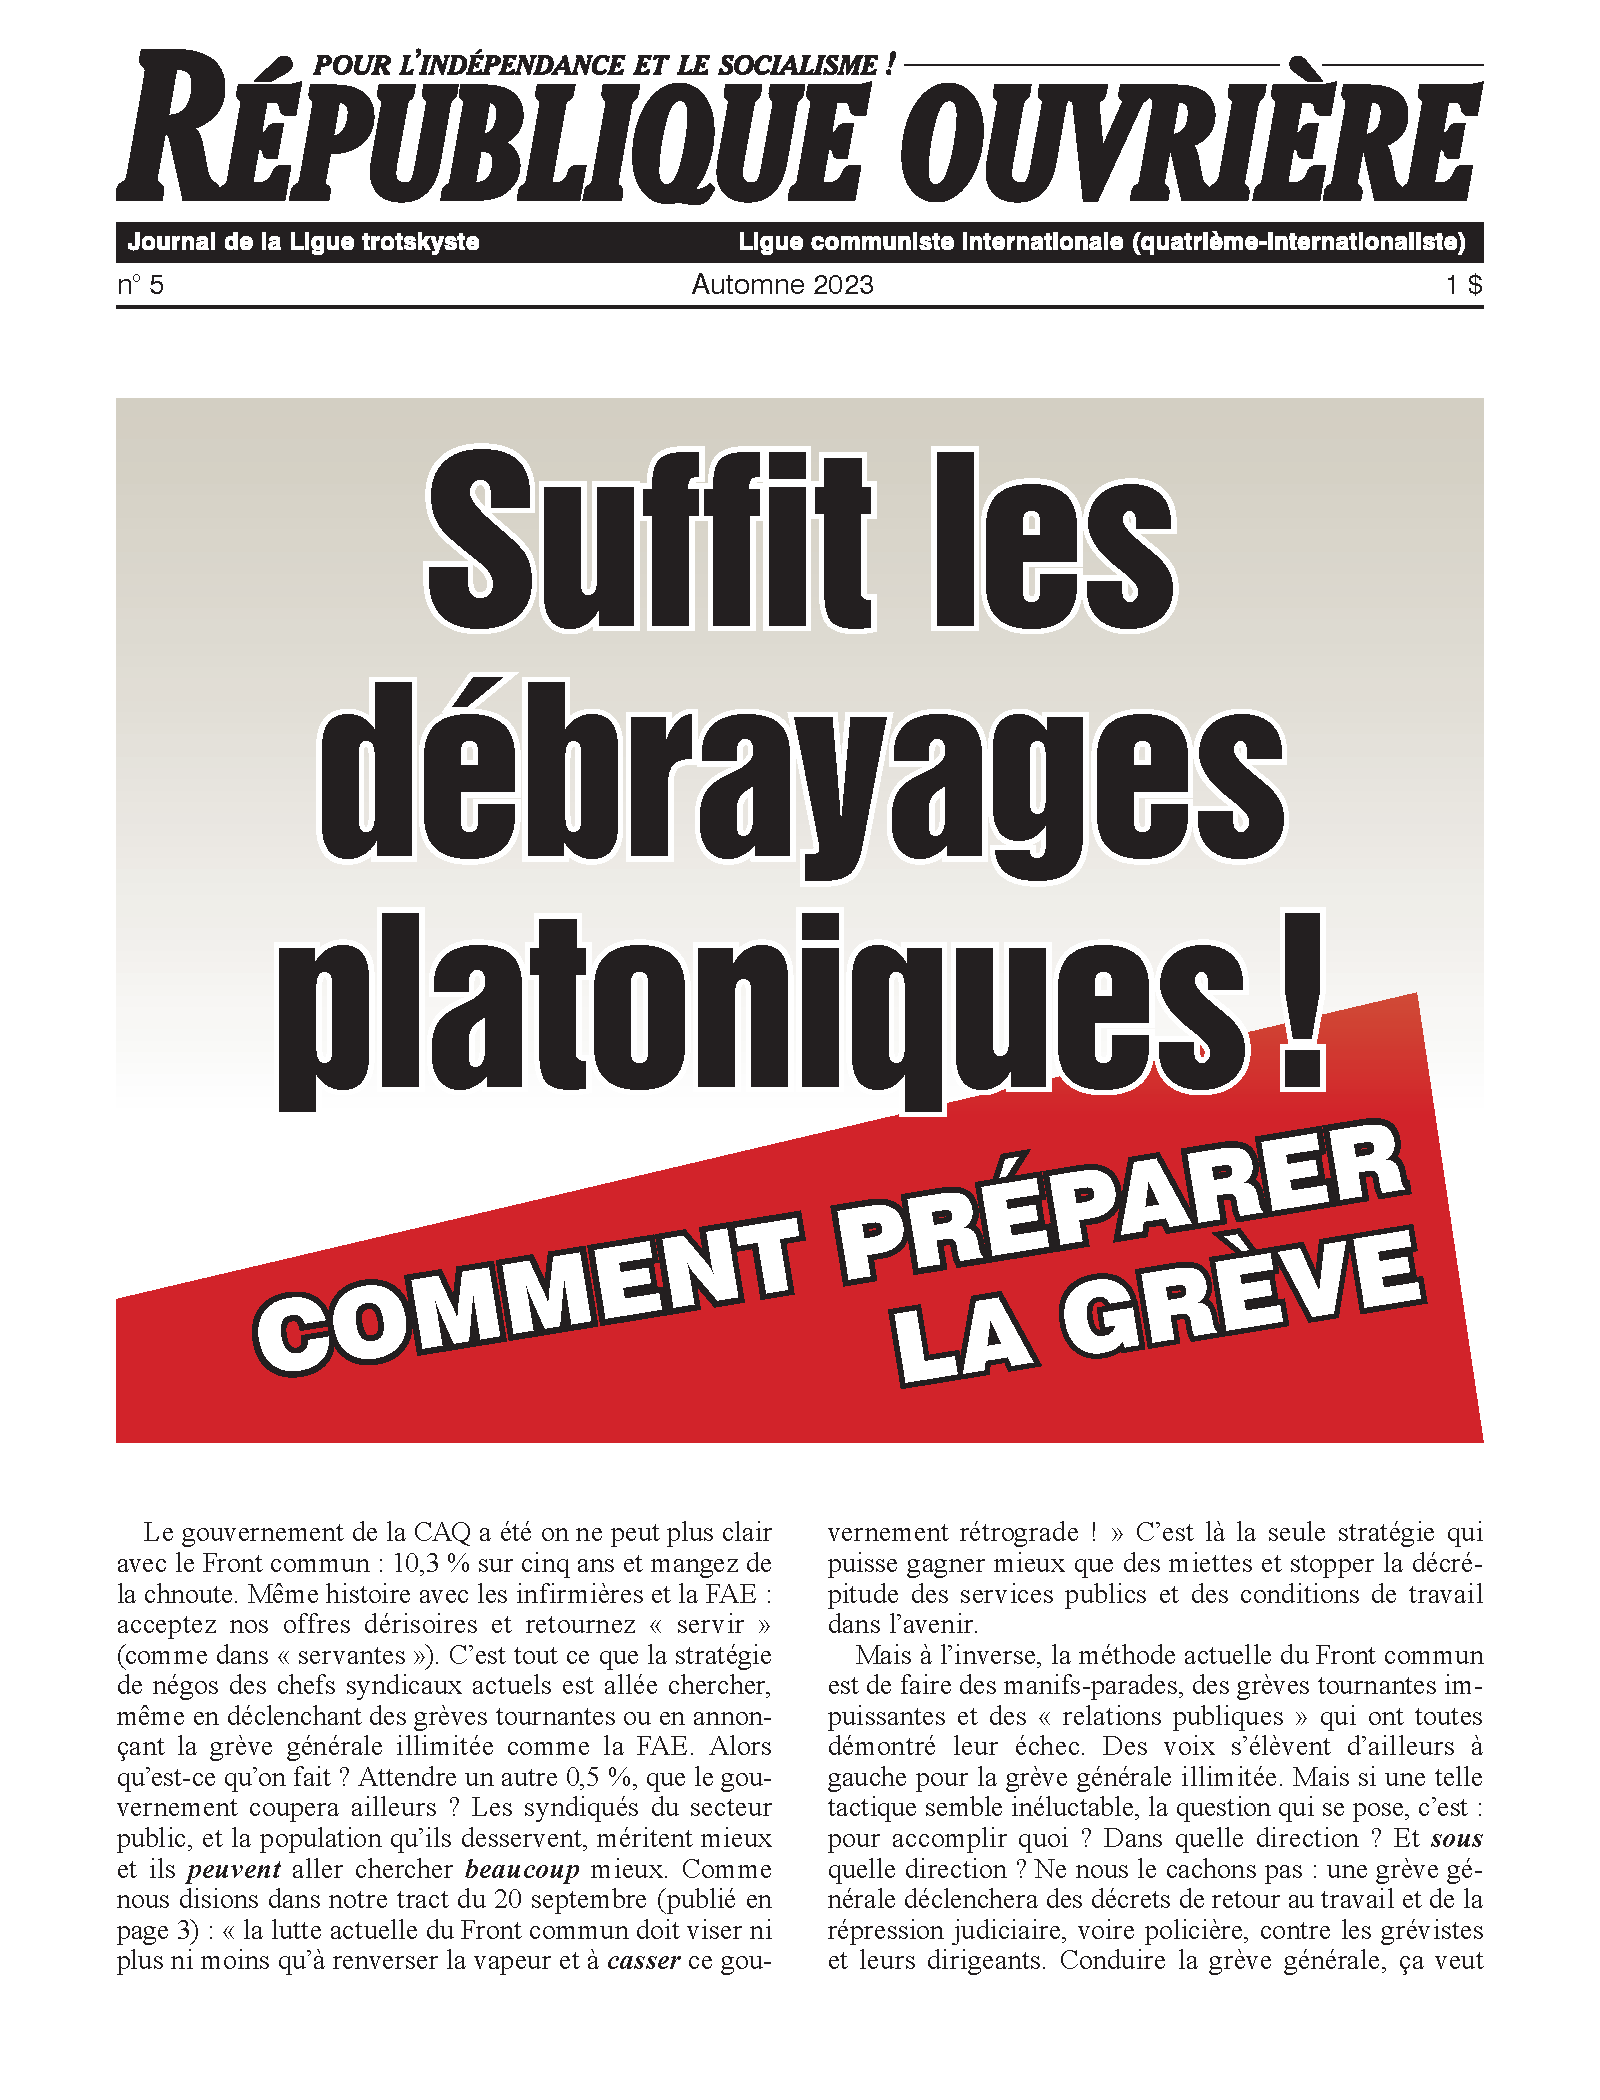 République ouvrière No. 5  |  19 de noviembre de 2023